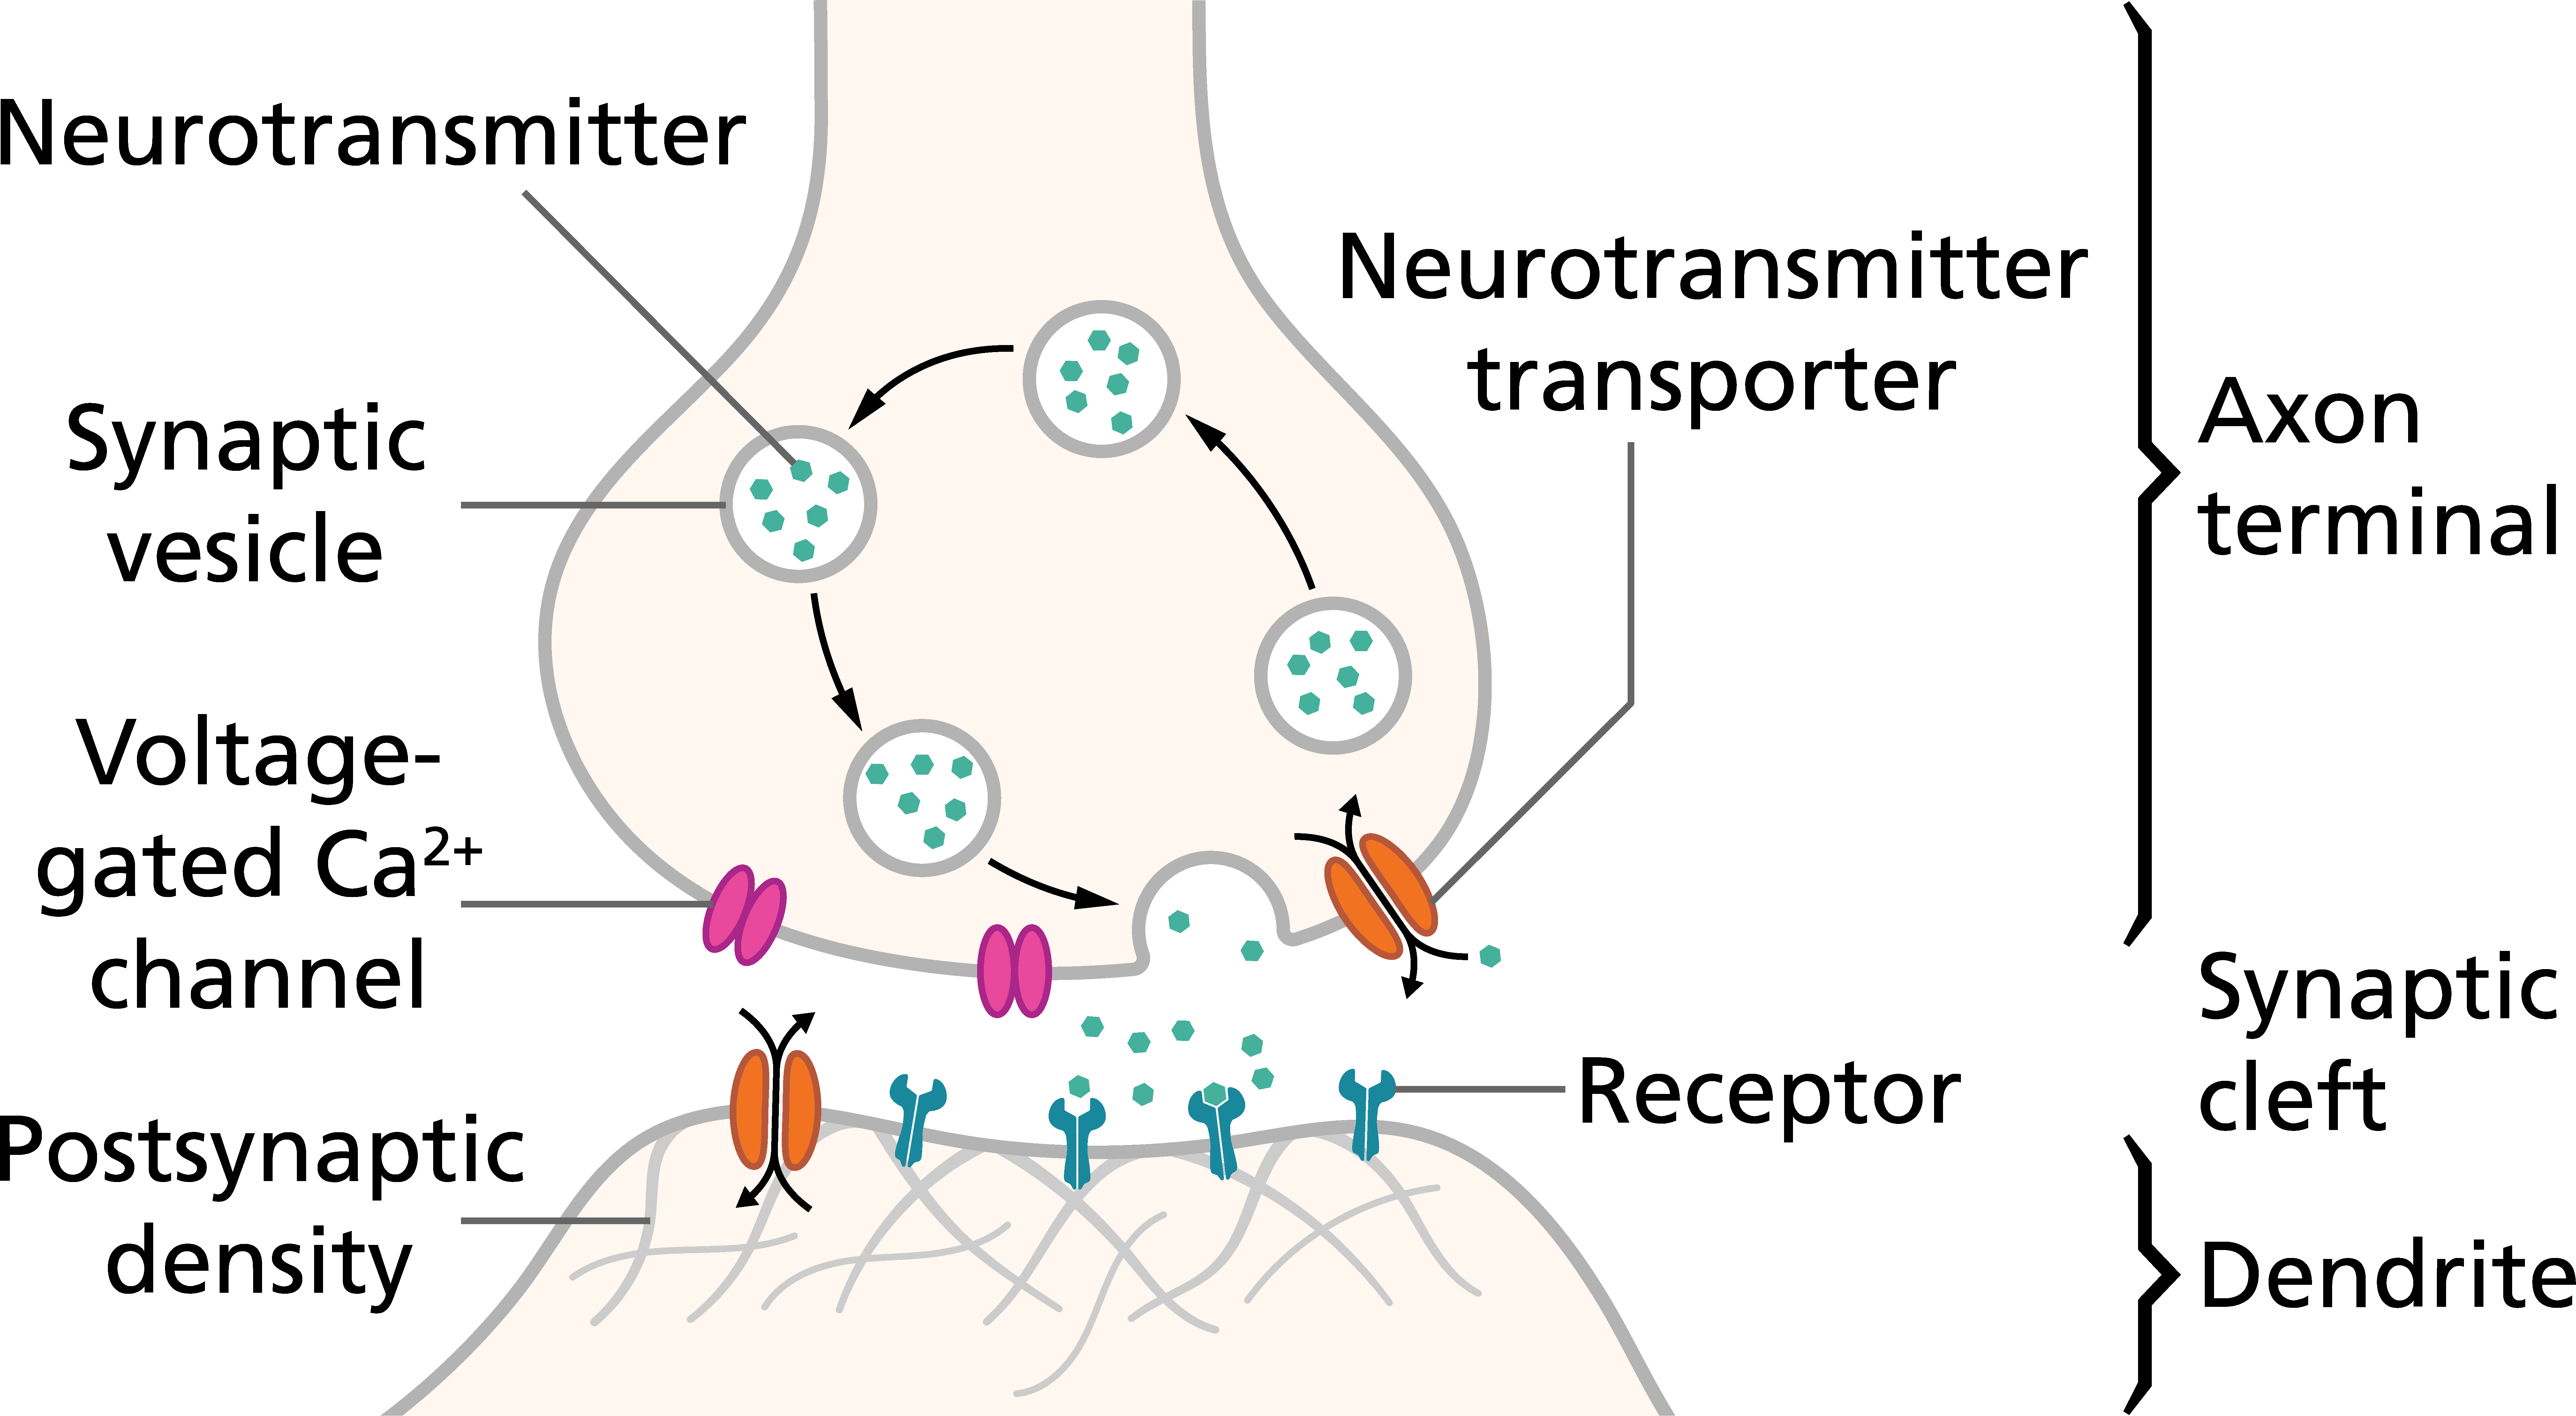 dendrite receptors